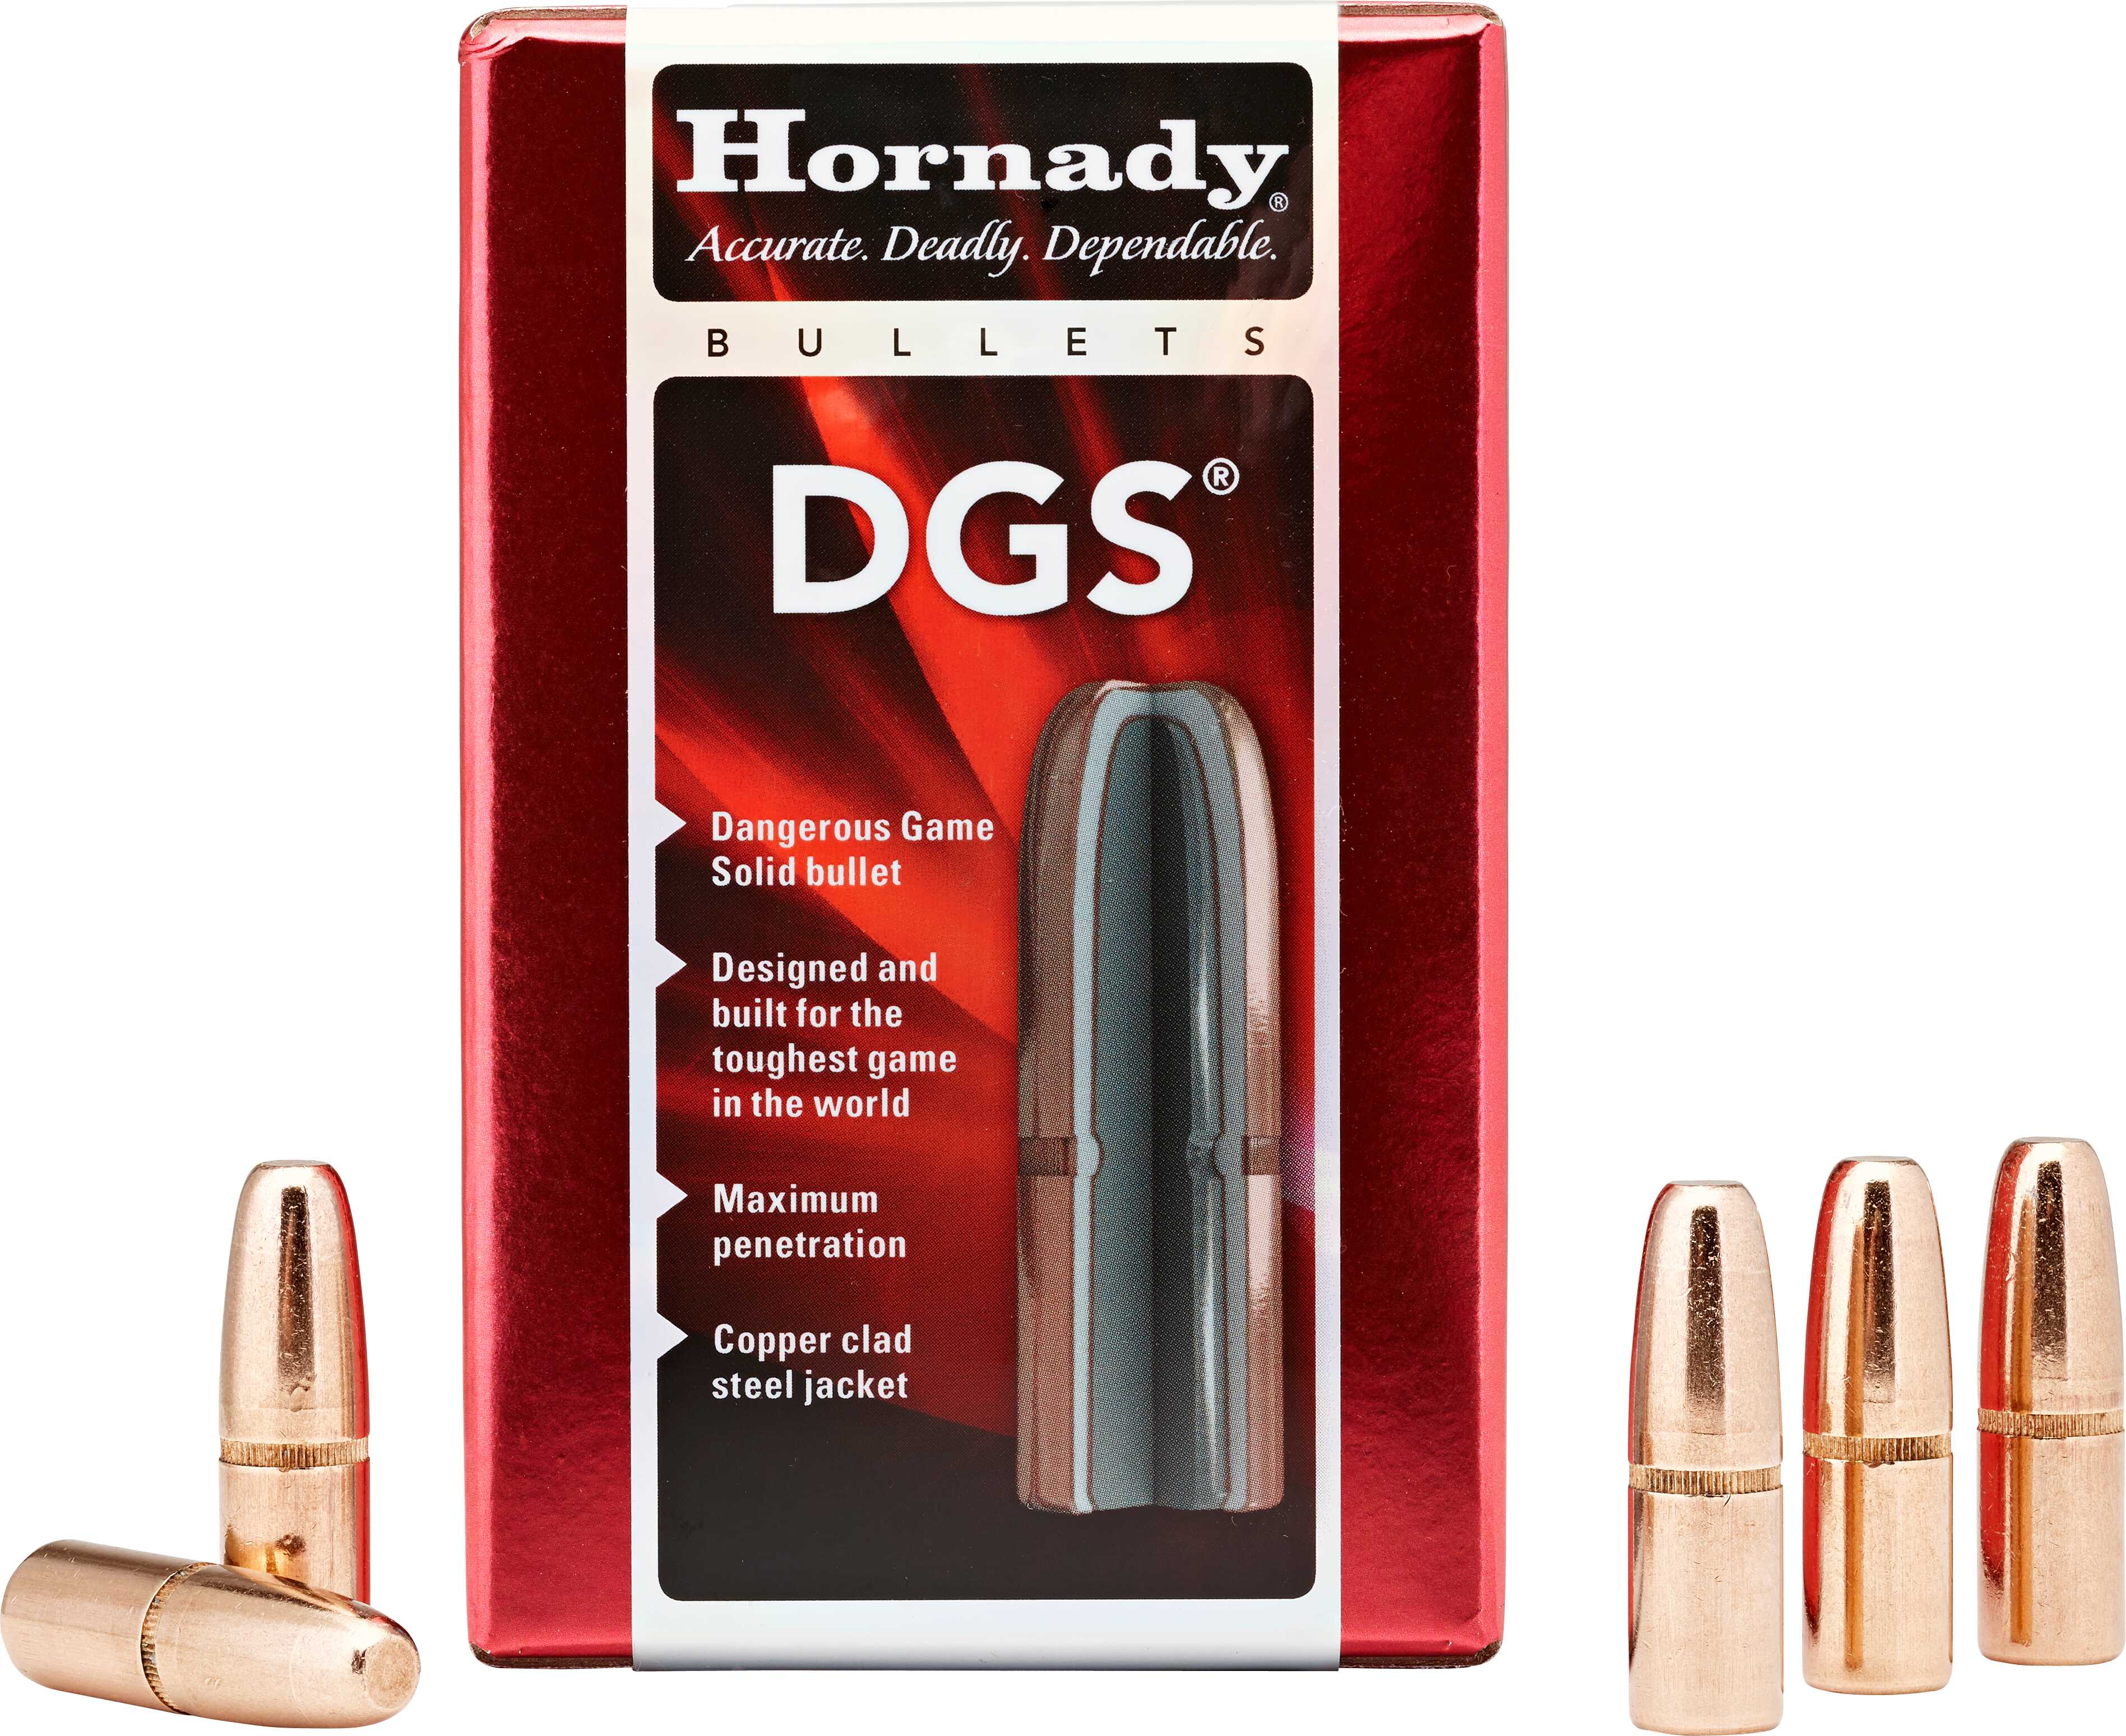 Hornady Bullet, 375 Caliber .375 300 Grain Dgs, Rds